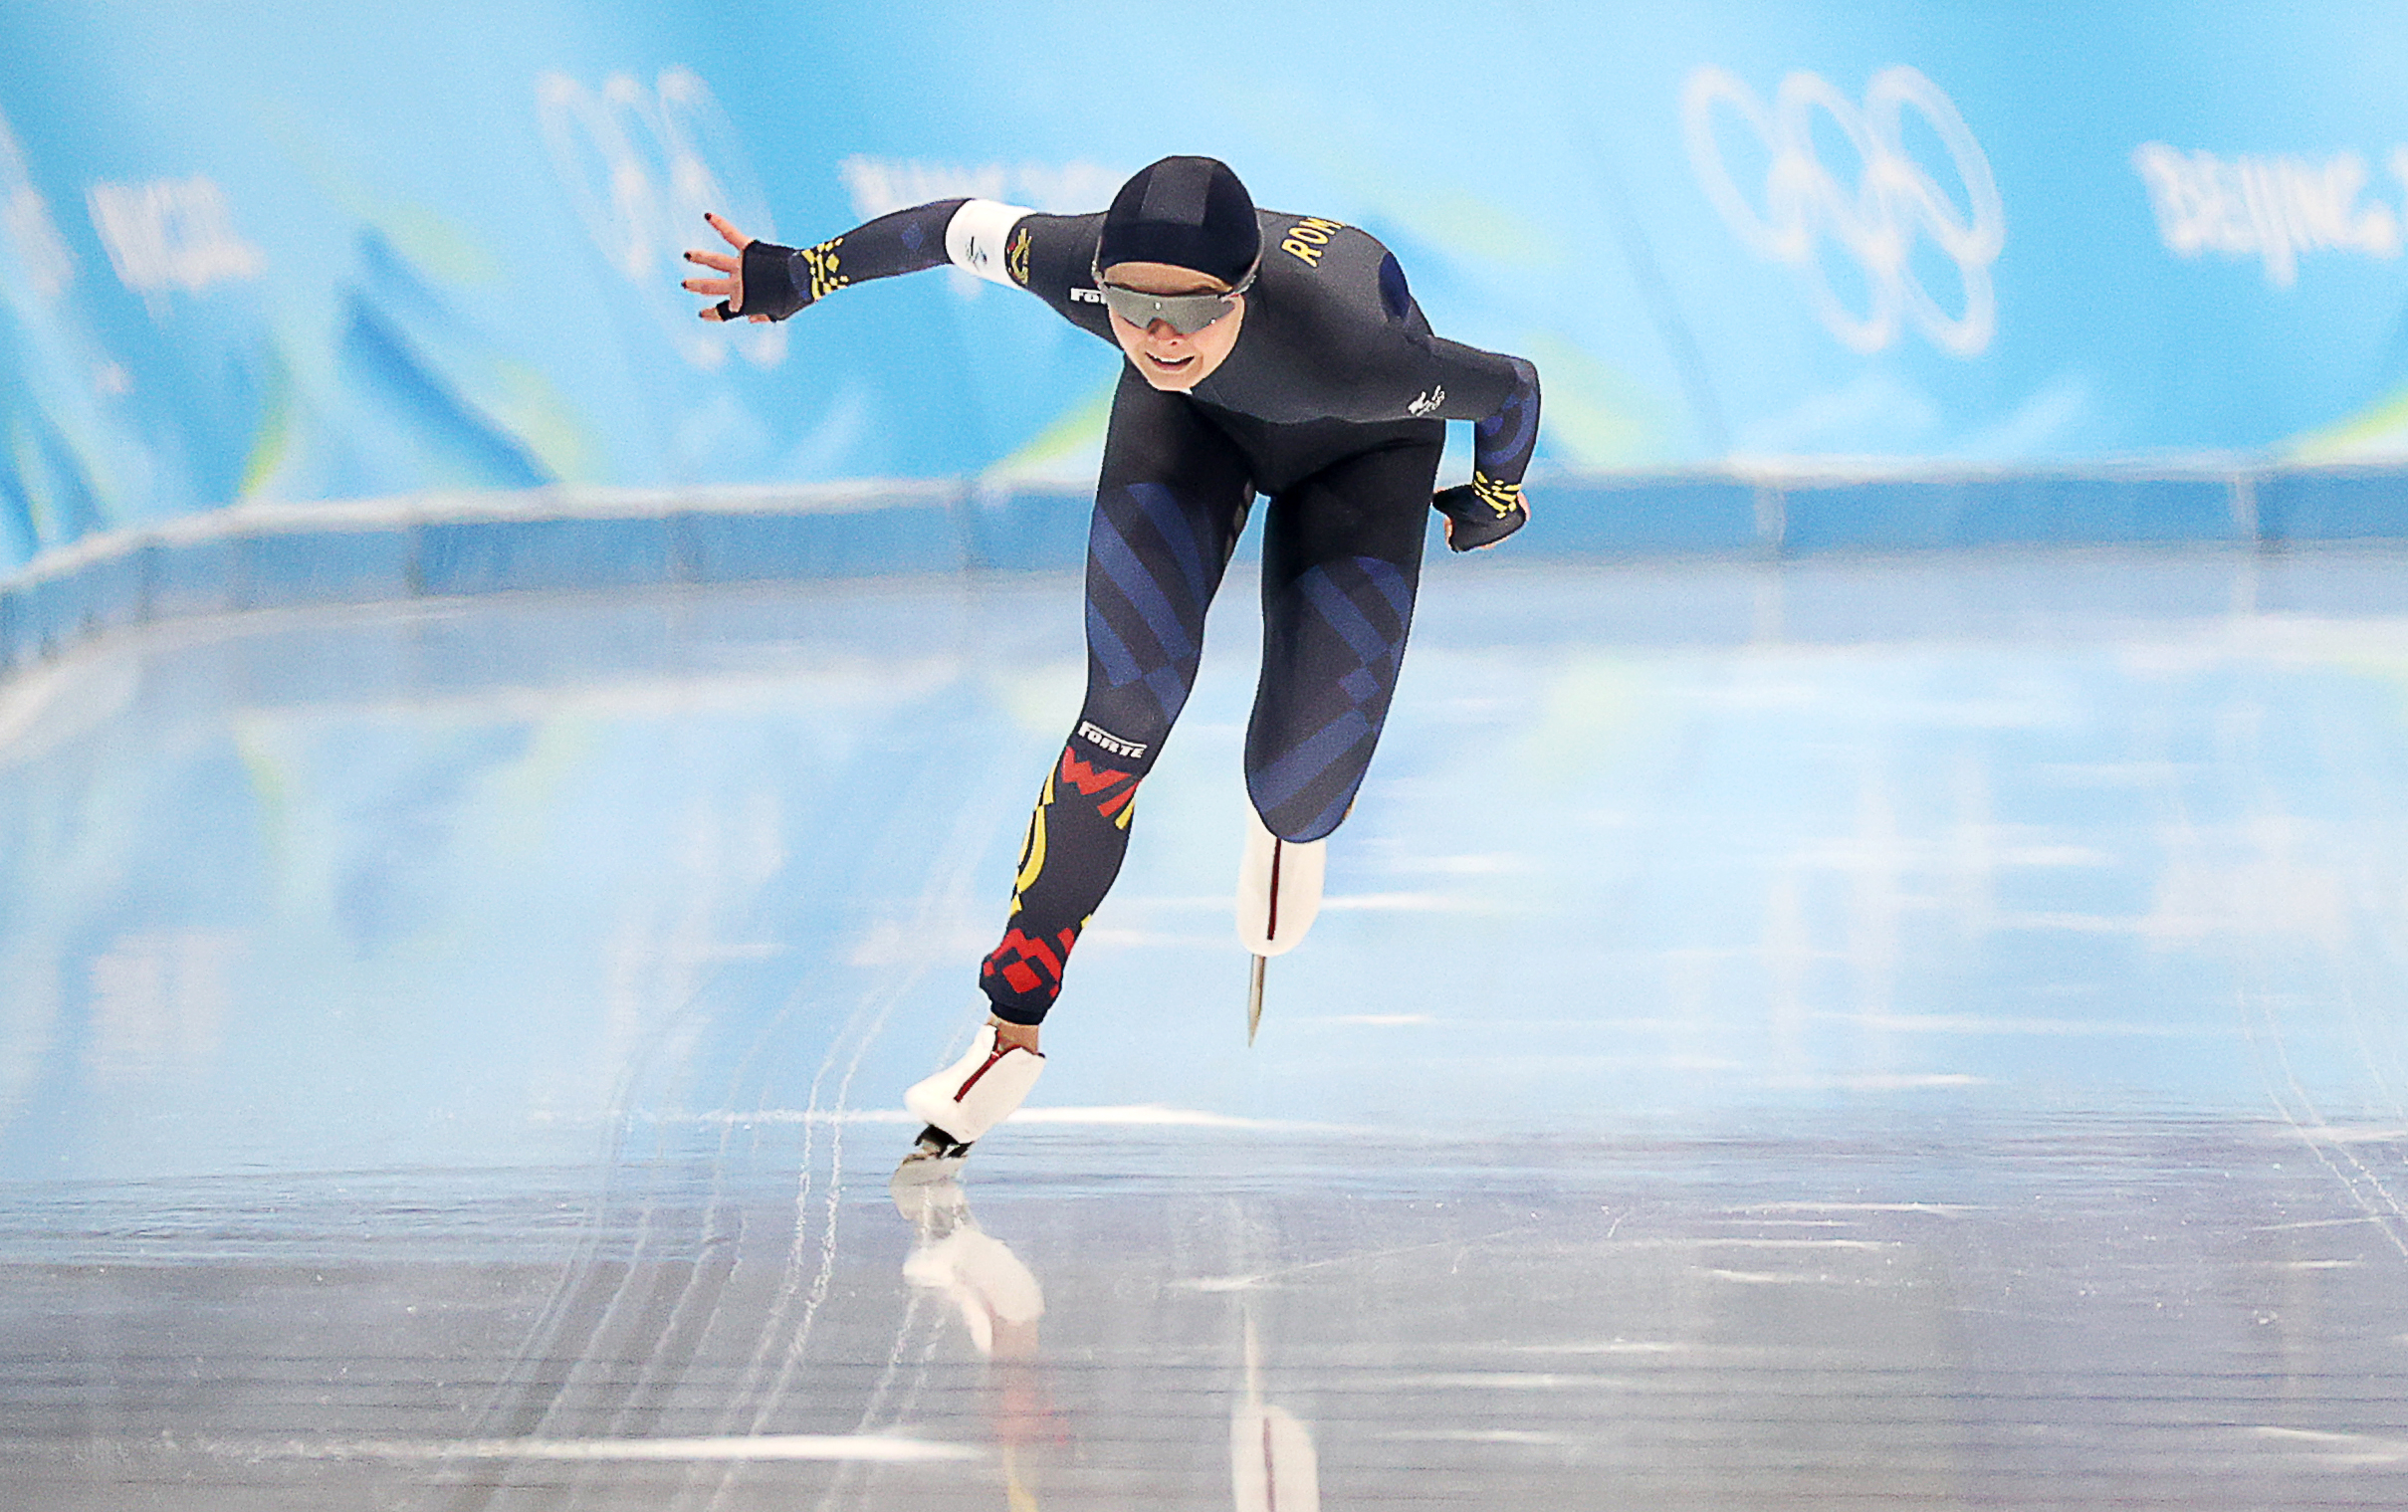 Cum s-a descurcat Mihaela Hogaș, cea mai rapidă patinatoare română, la 1000 de metri viteză, unde s-a stabilit un record olimpic